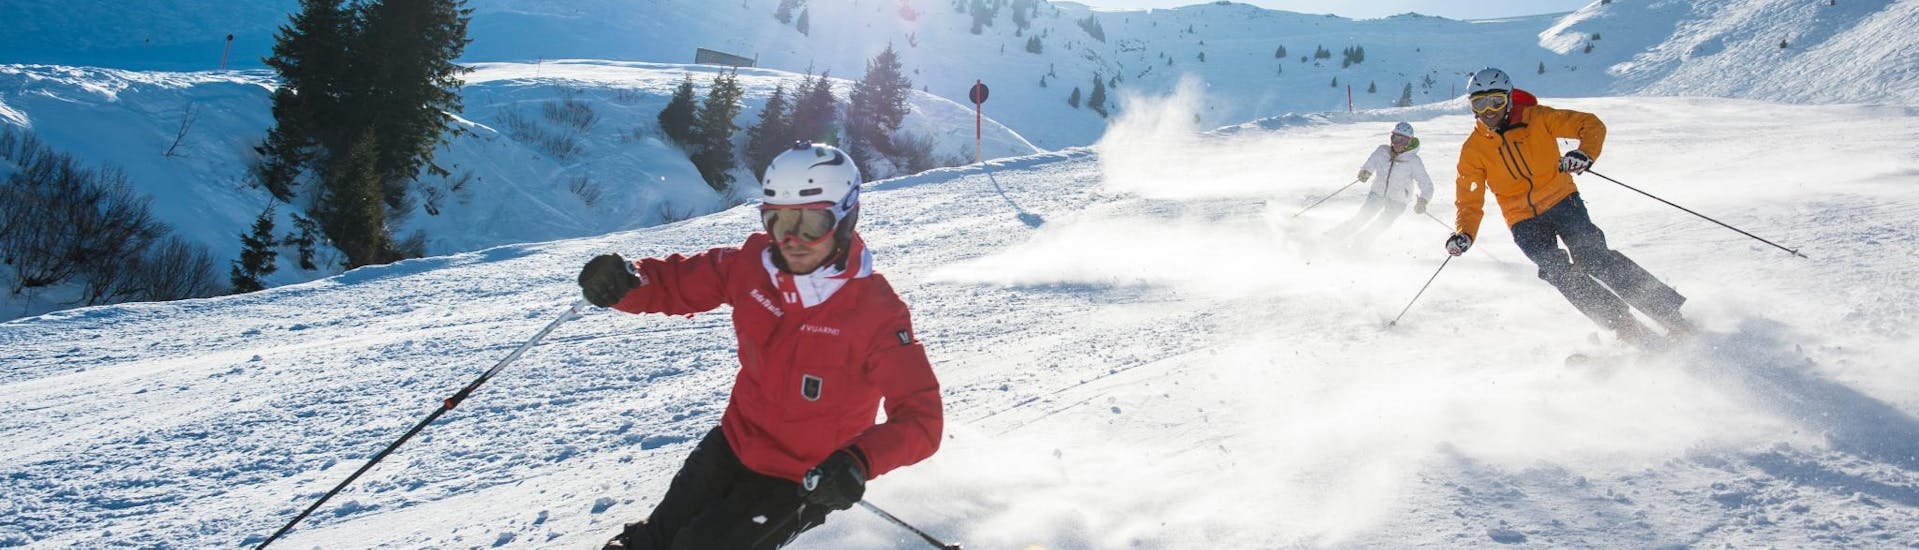 Im Skikurs für Erwachsene - Mit Erfahrung zeigt ein Skilehrer der Skischule Kitzbühel Rote Teufel seiner Gruppe die richtige Skitechnik.